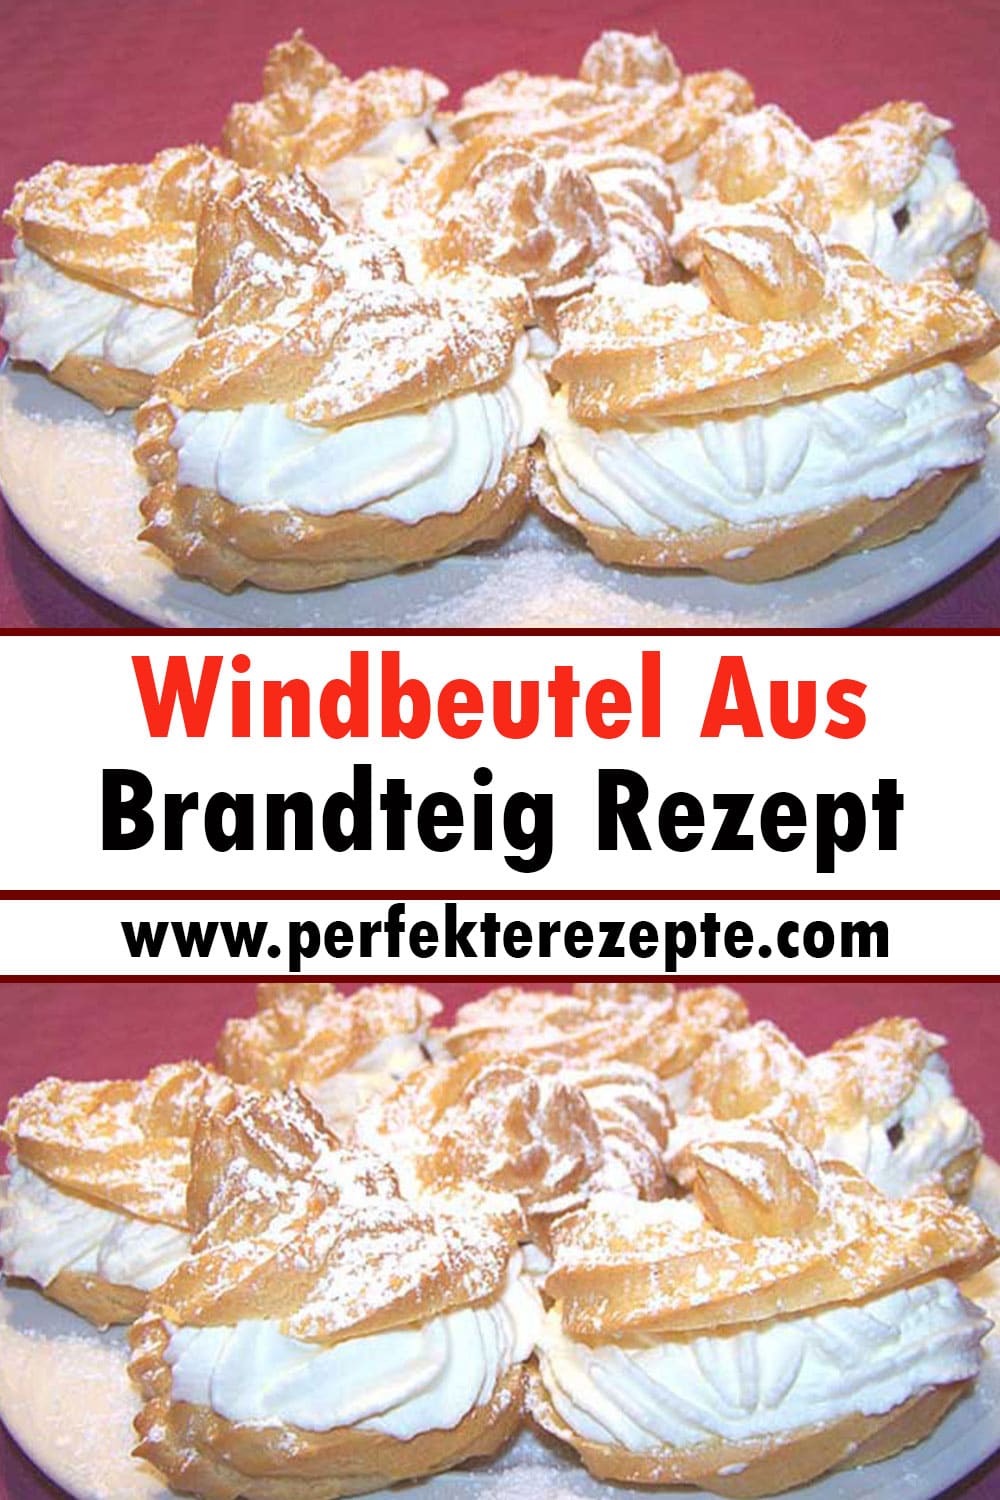 Windbeutel Aus Brandteig Rezept